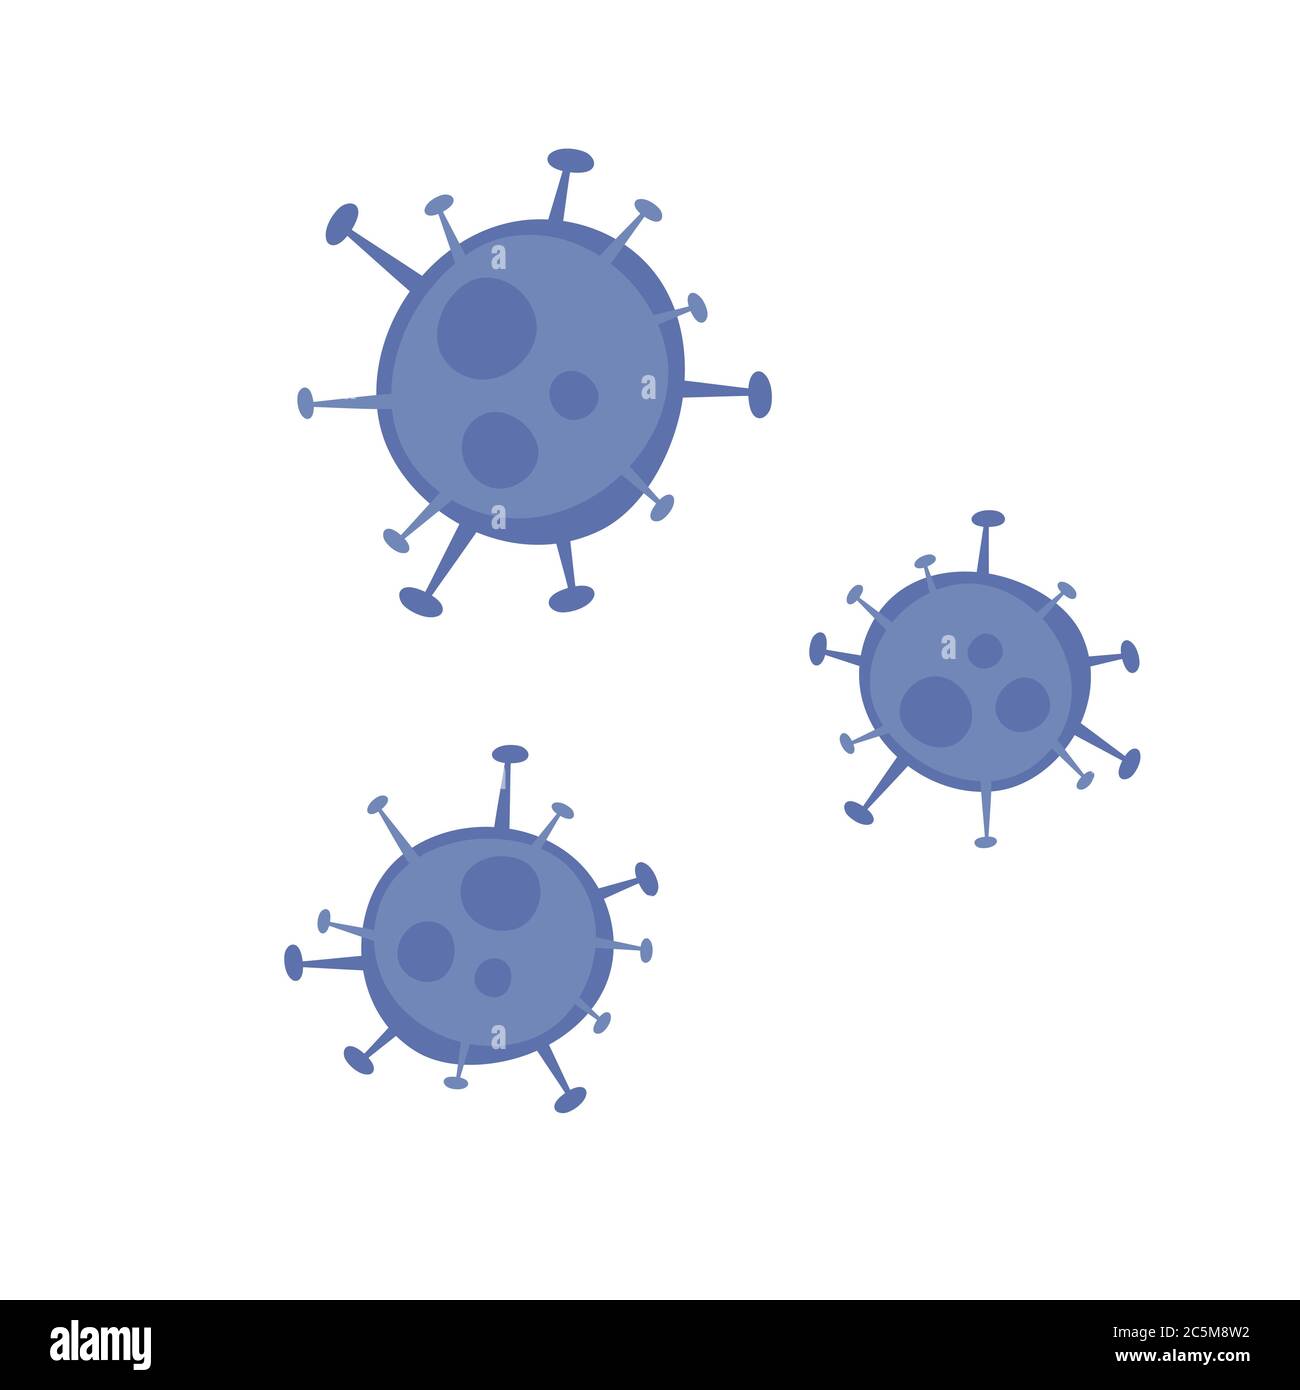 Coronavirus 2019-nCoV. Icona del virus corona. Nero su sfondo rosso isolato. Infezione respiratoria patogena cinese (epidemia di influenza asiatica). Vettore Illustrazione Vettoriale